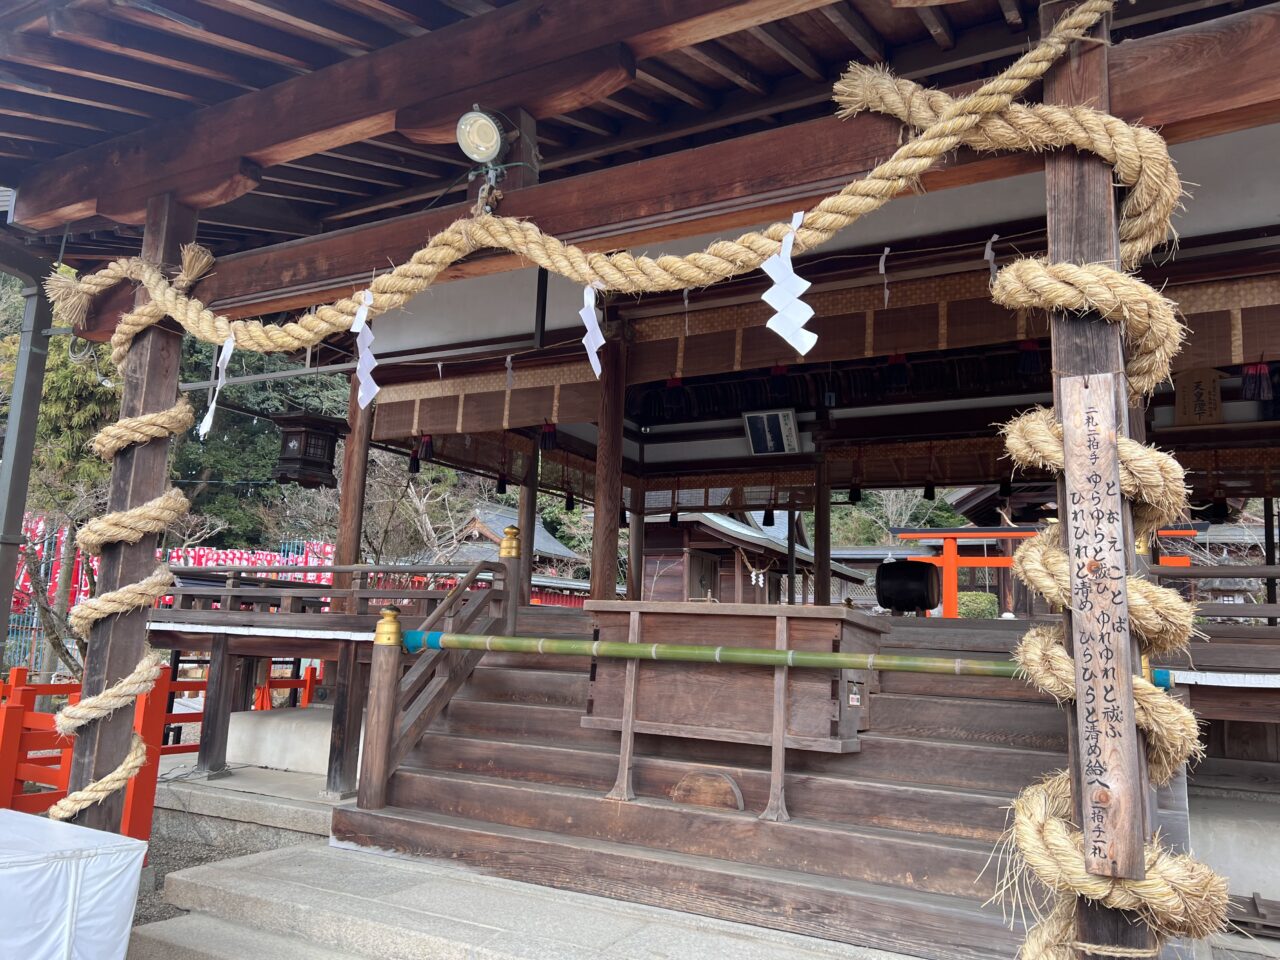 、聖徳太子が法隆寺建立時の参拝したことで有名な奈良県生駒郡にある「龍田大社」の本殿